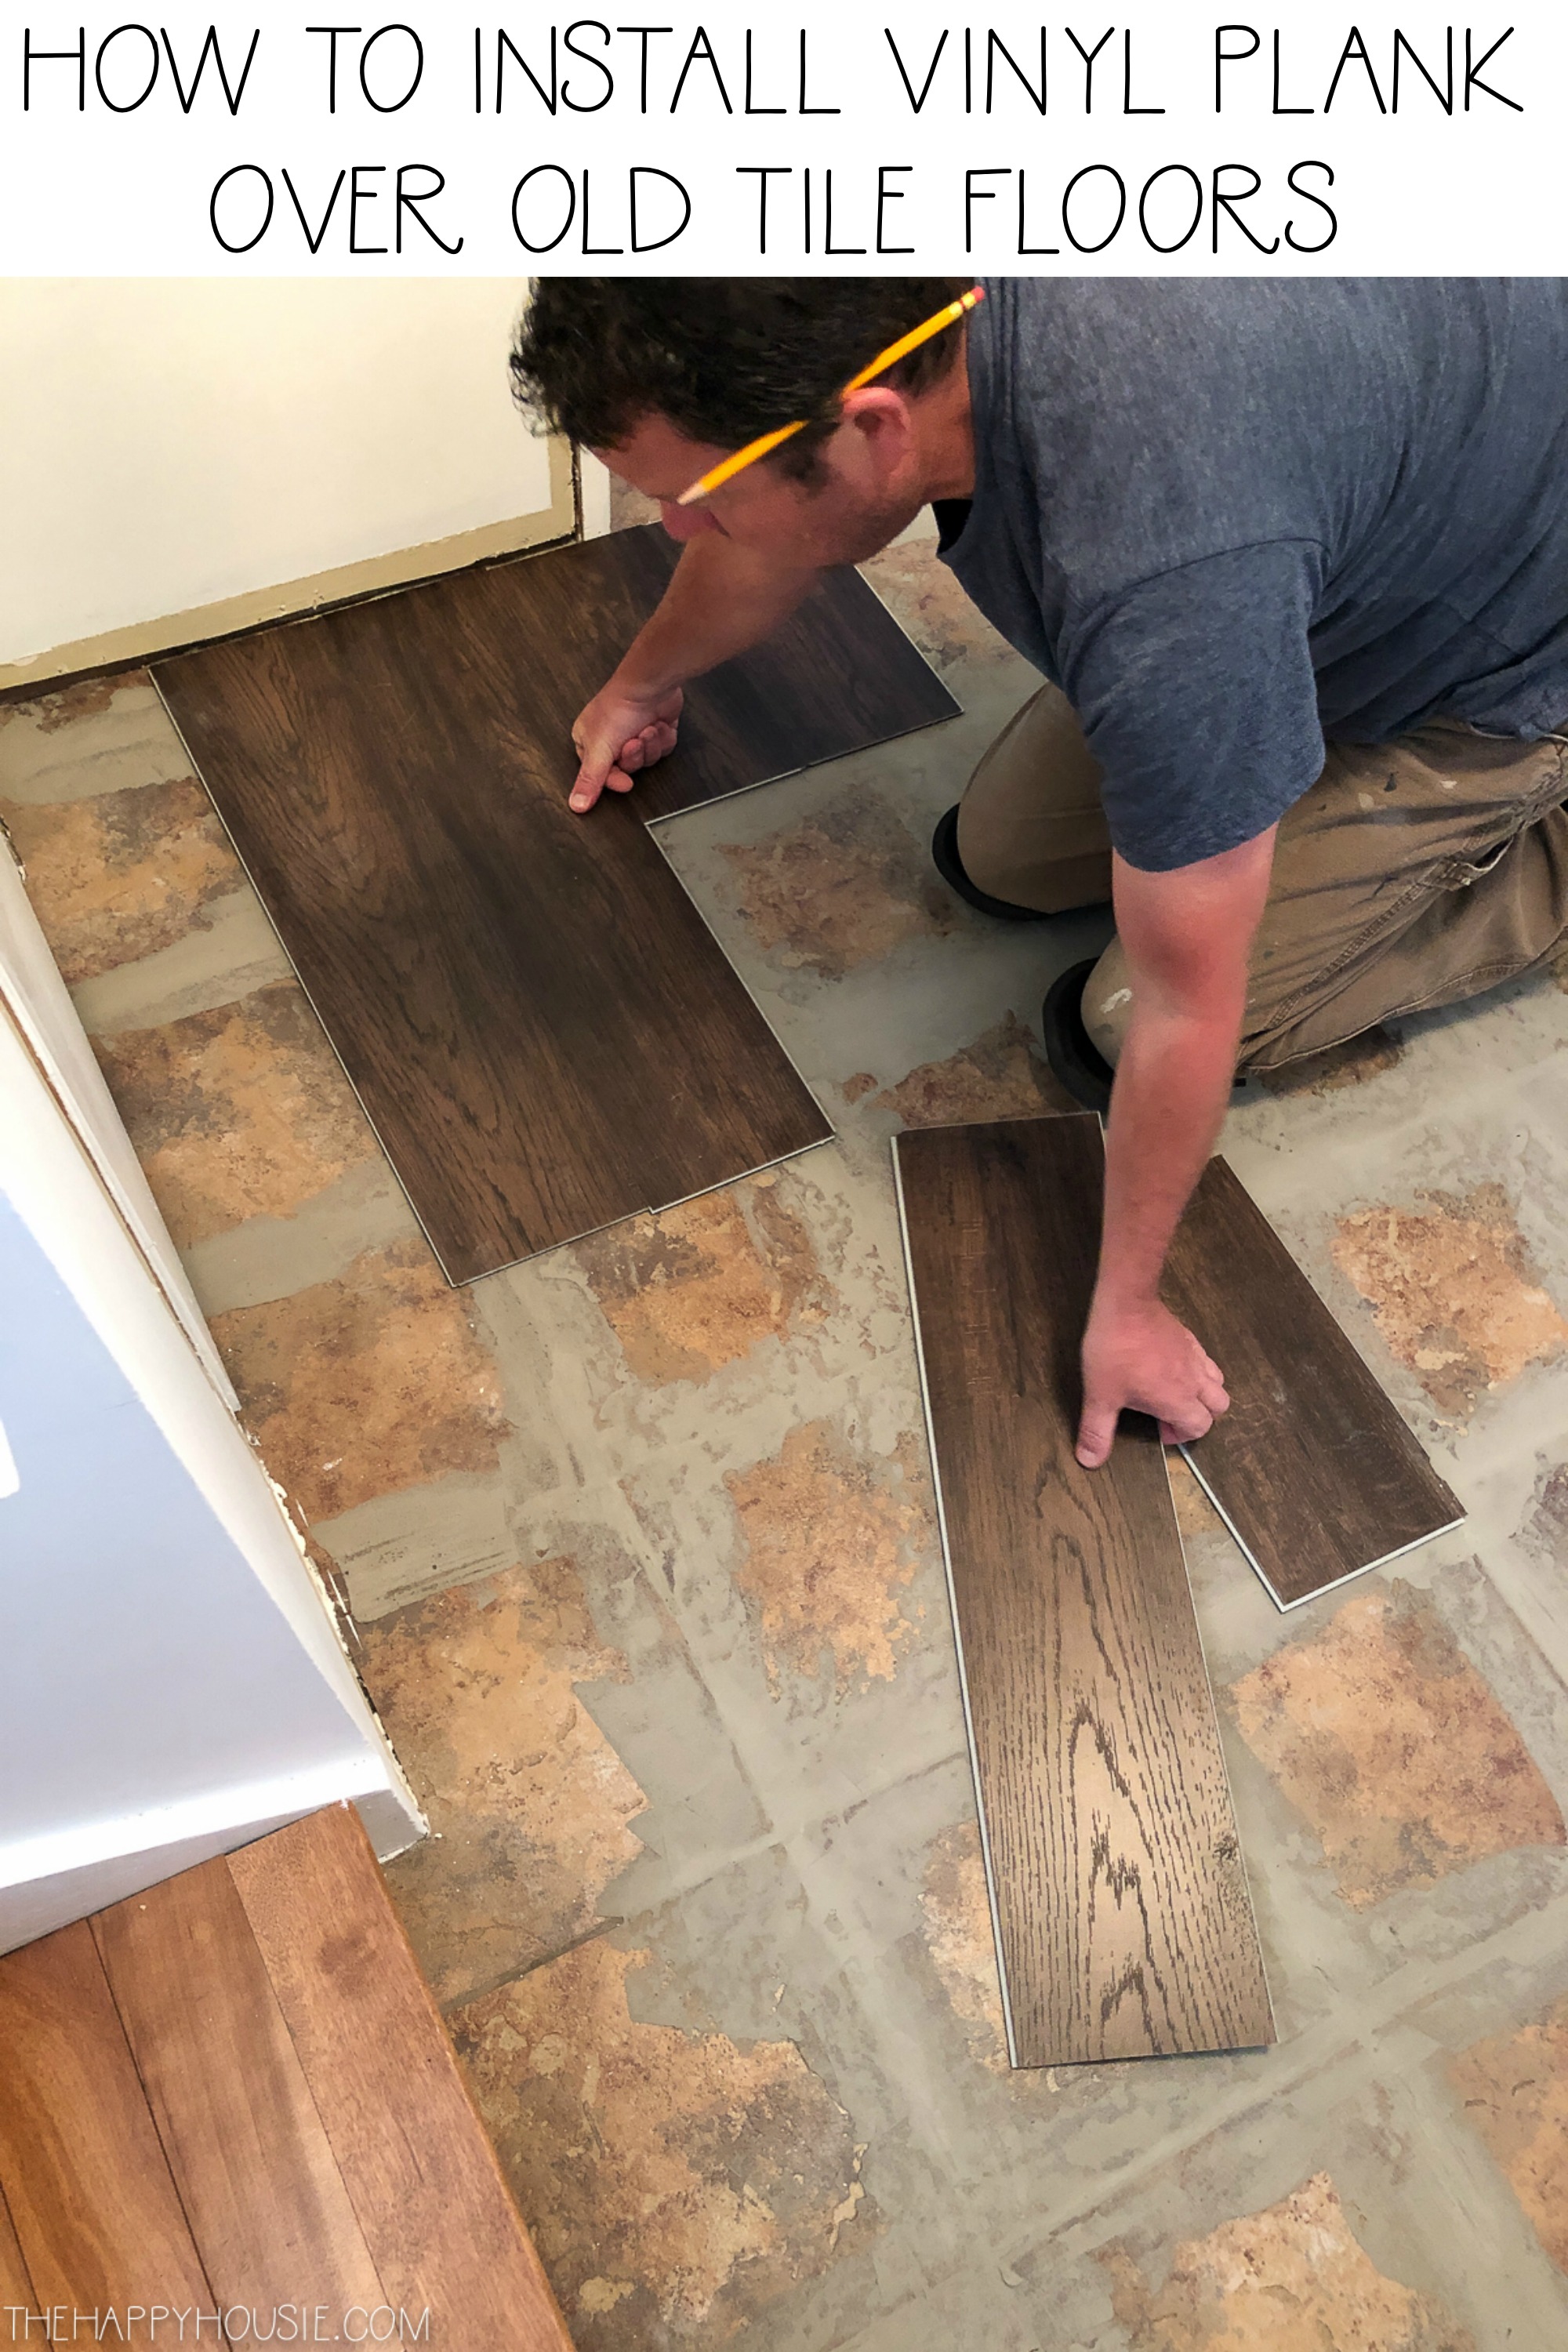 Install Vinyl Plank Over Tile Floors, Vinyl Plank Flooring To Ceramic Tile Transition